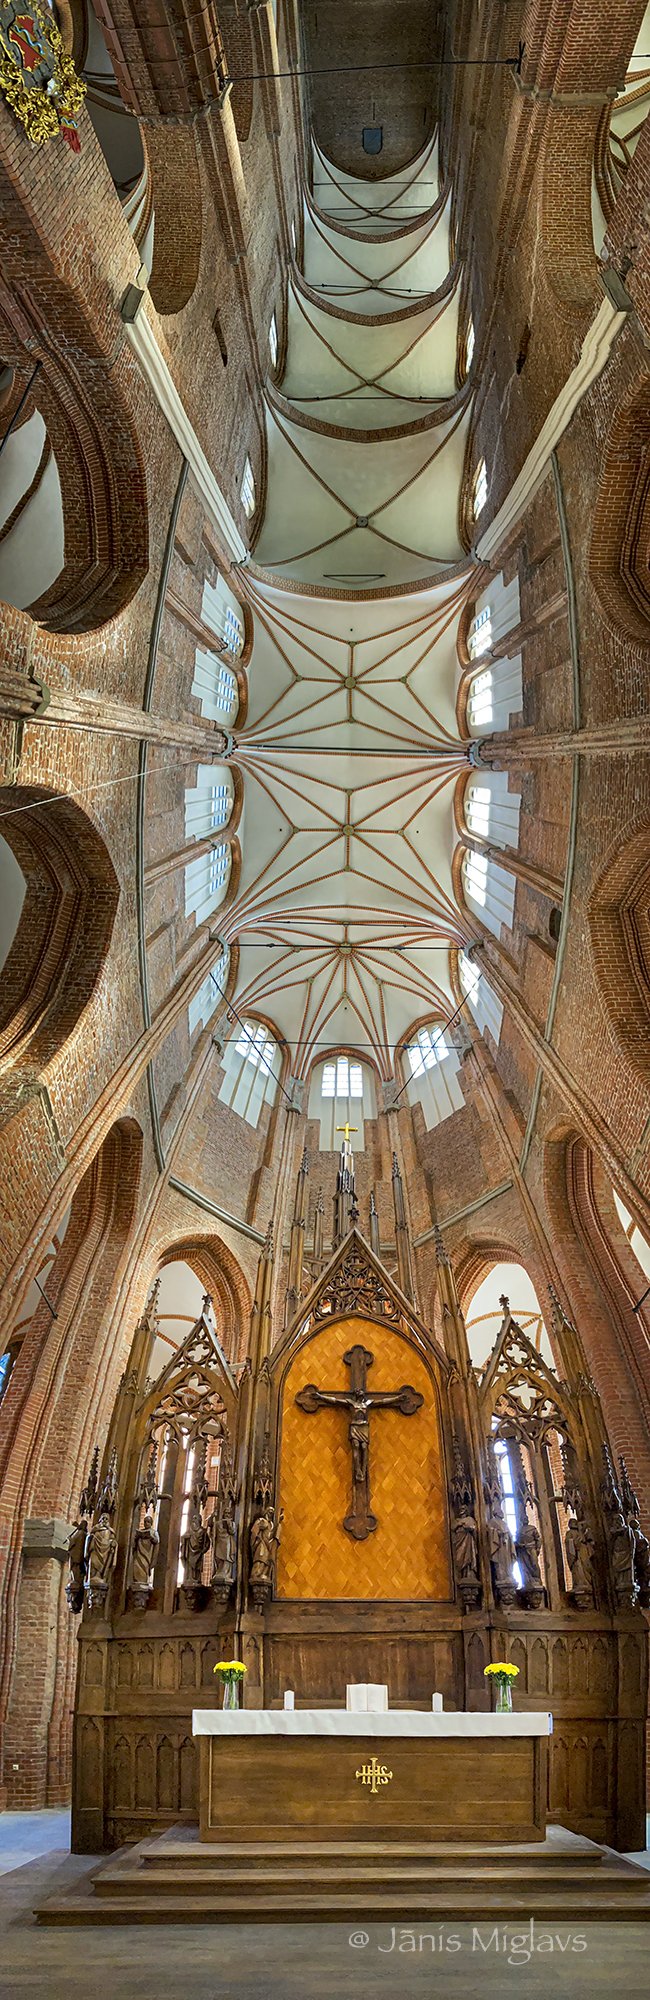 Interior of Riga’s St. Peter’s Church 